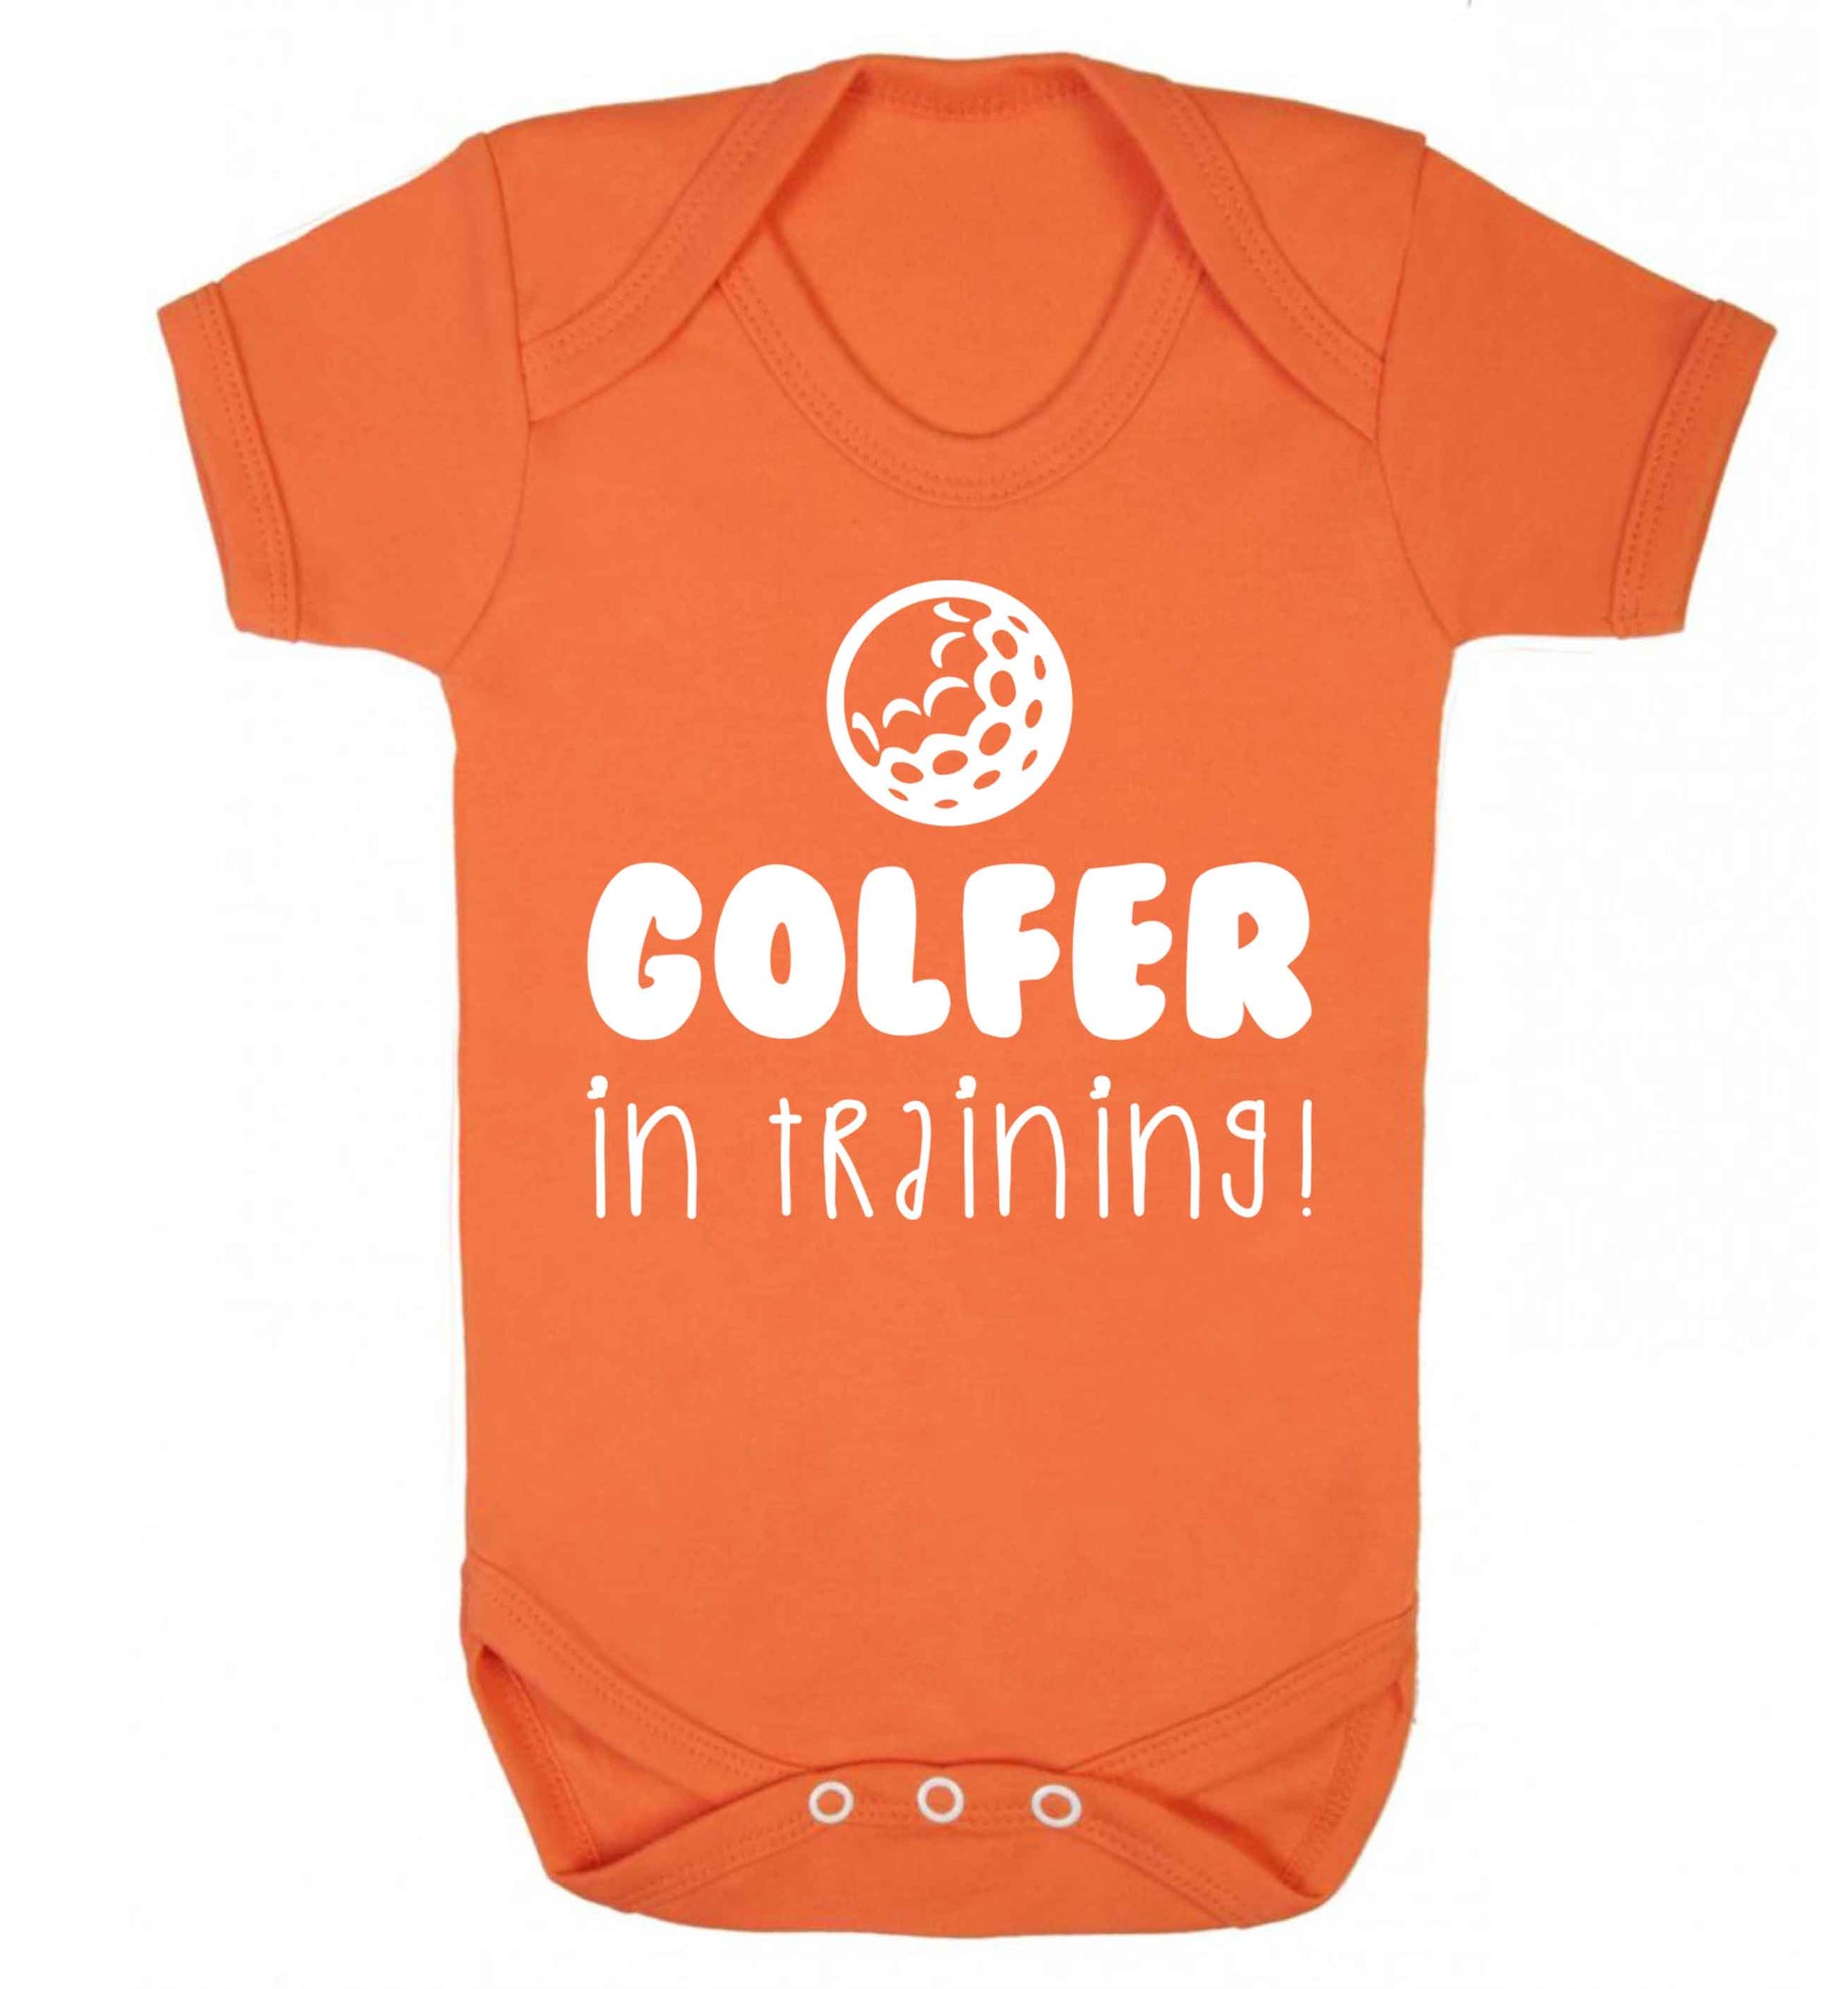 Golfer in training Baby Vest orange 18-24 months